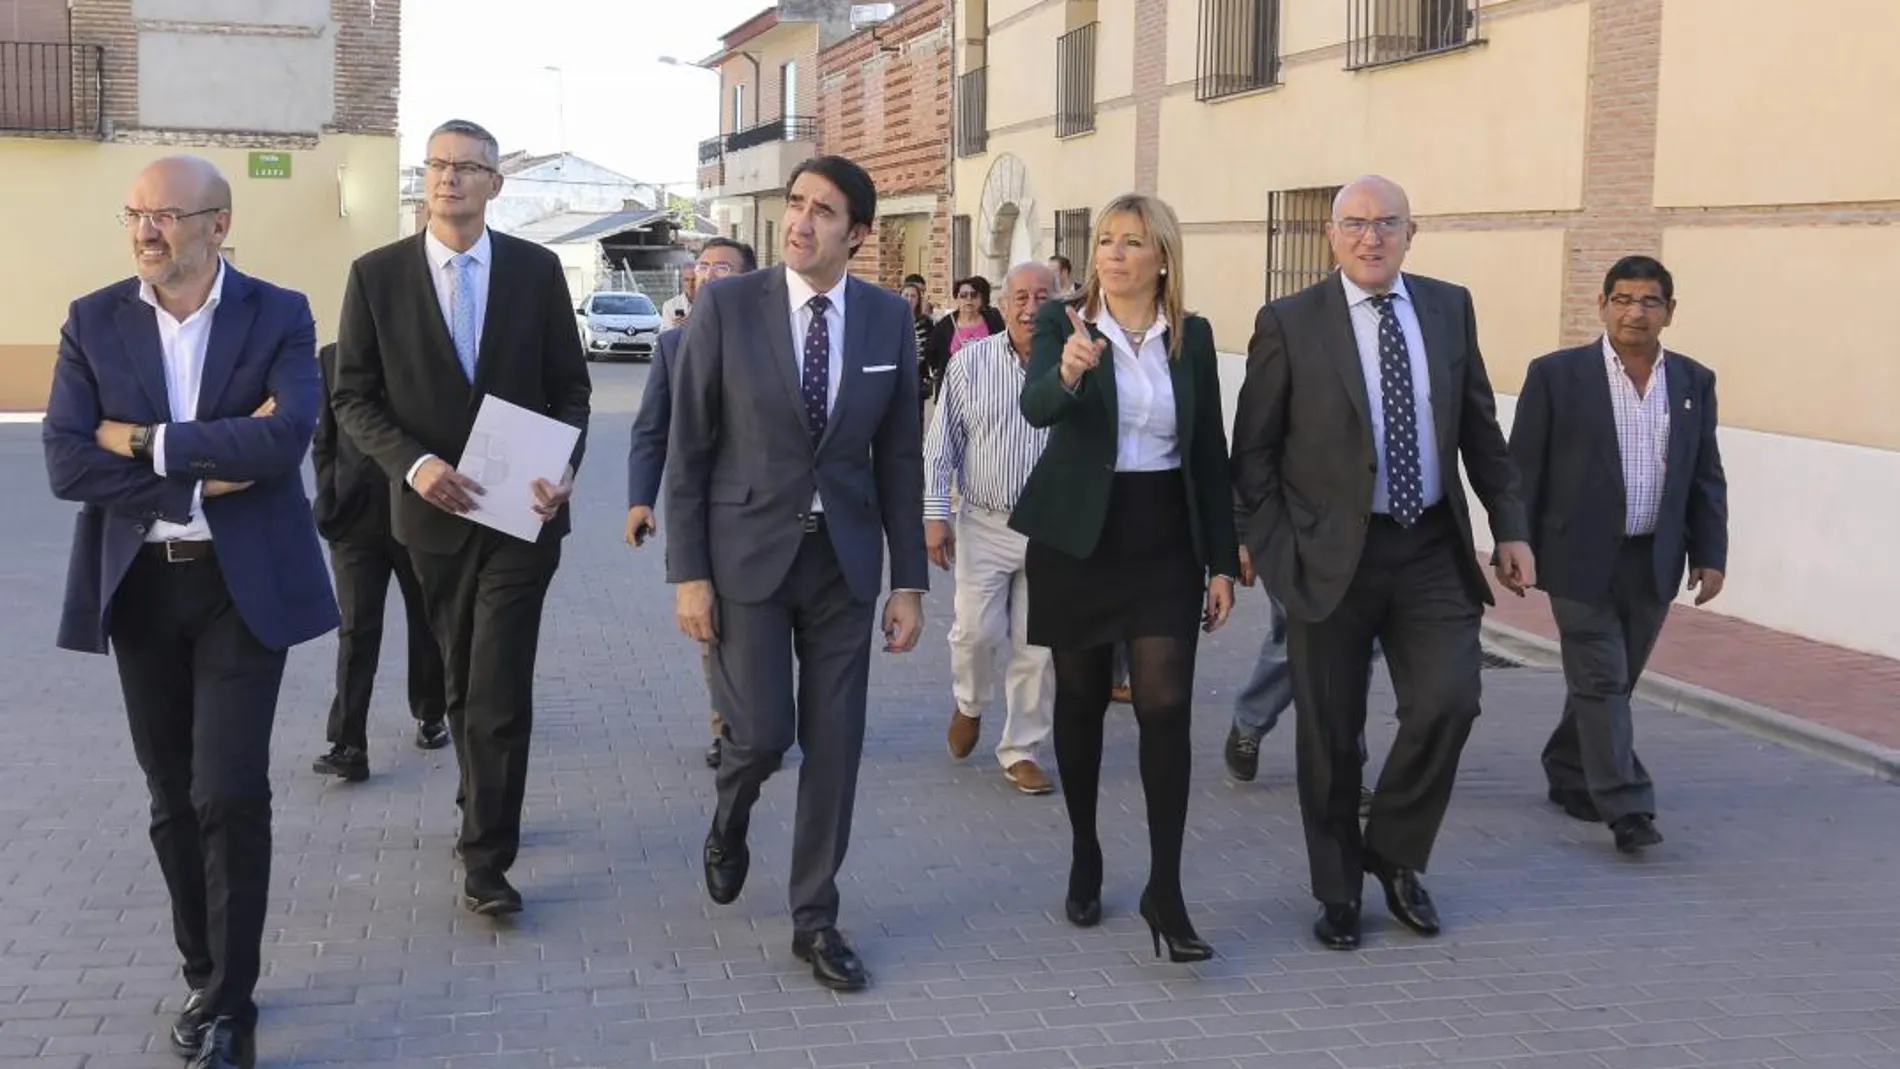 En la imagen, el consejero Juan Carlos Suárez-Quiñones, y el presidente de la Diputación de Valladolid, Jesús Julio Carnero, entre otras autoridades